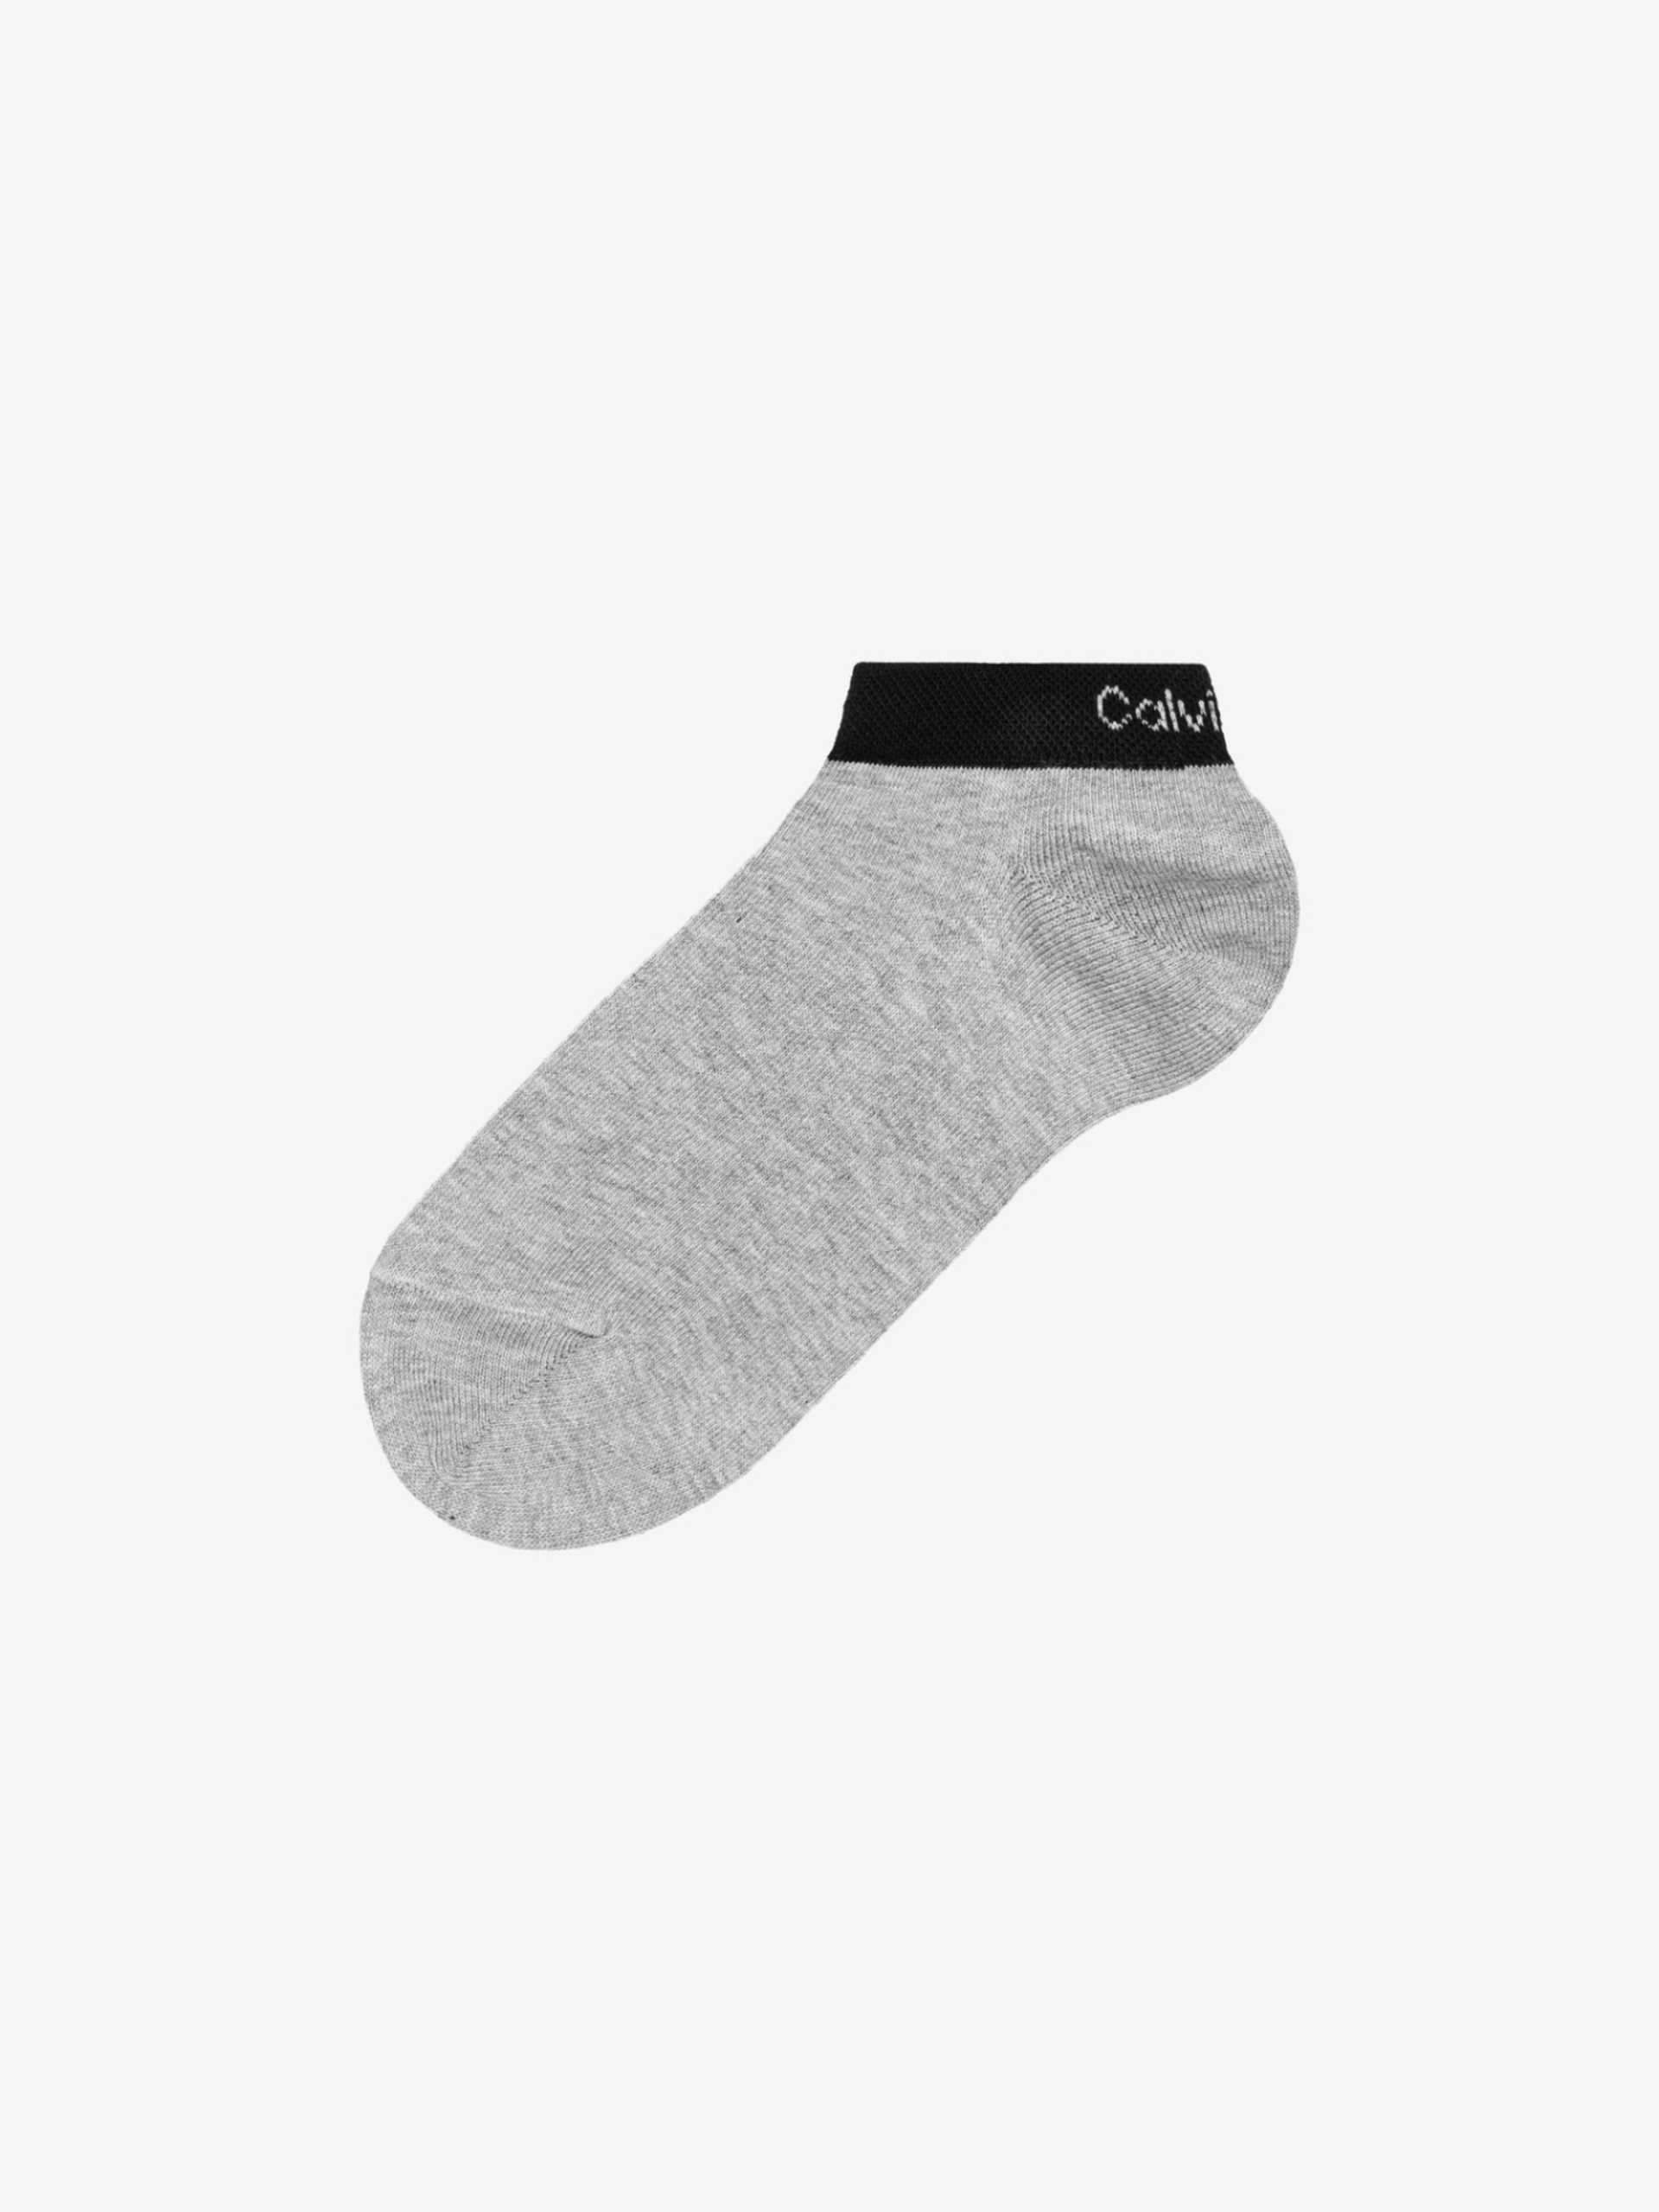 Calvin Klein pánské ponožky 2pack - M/L (98)